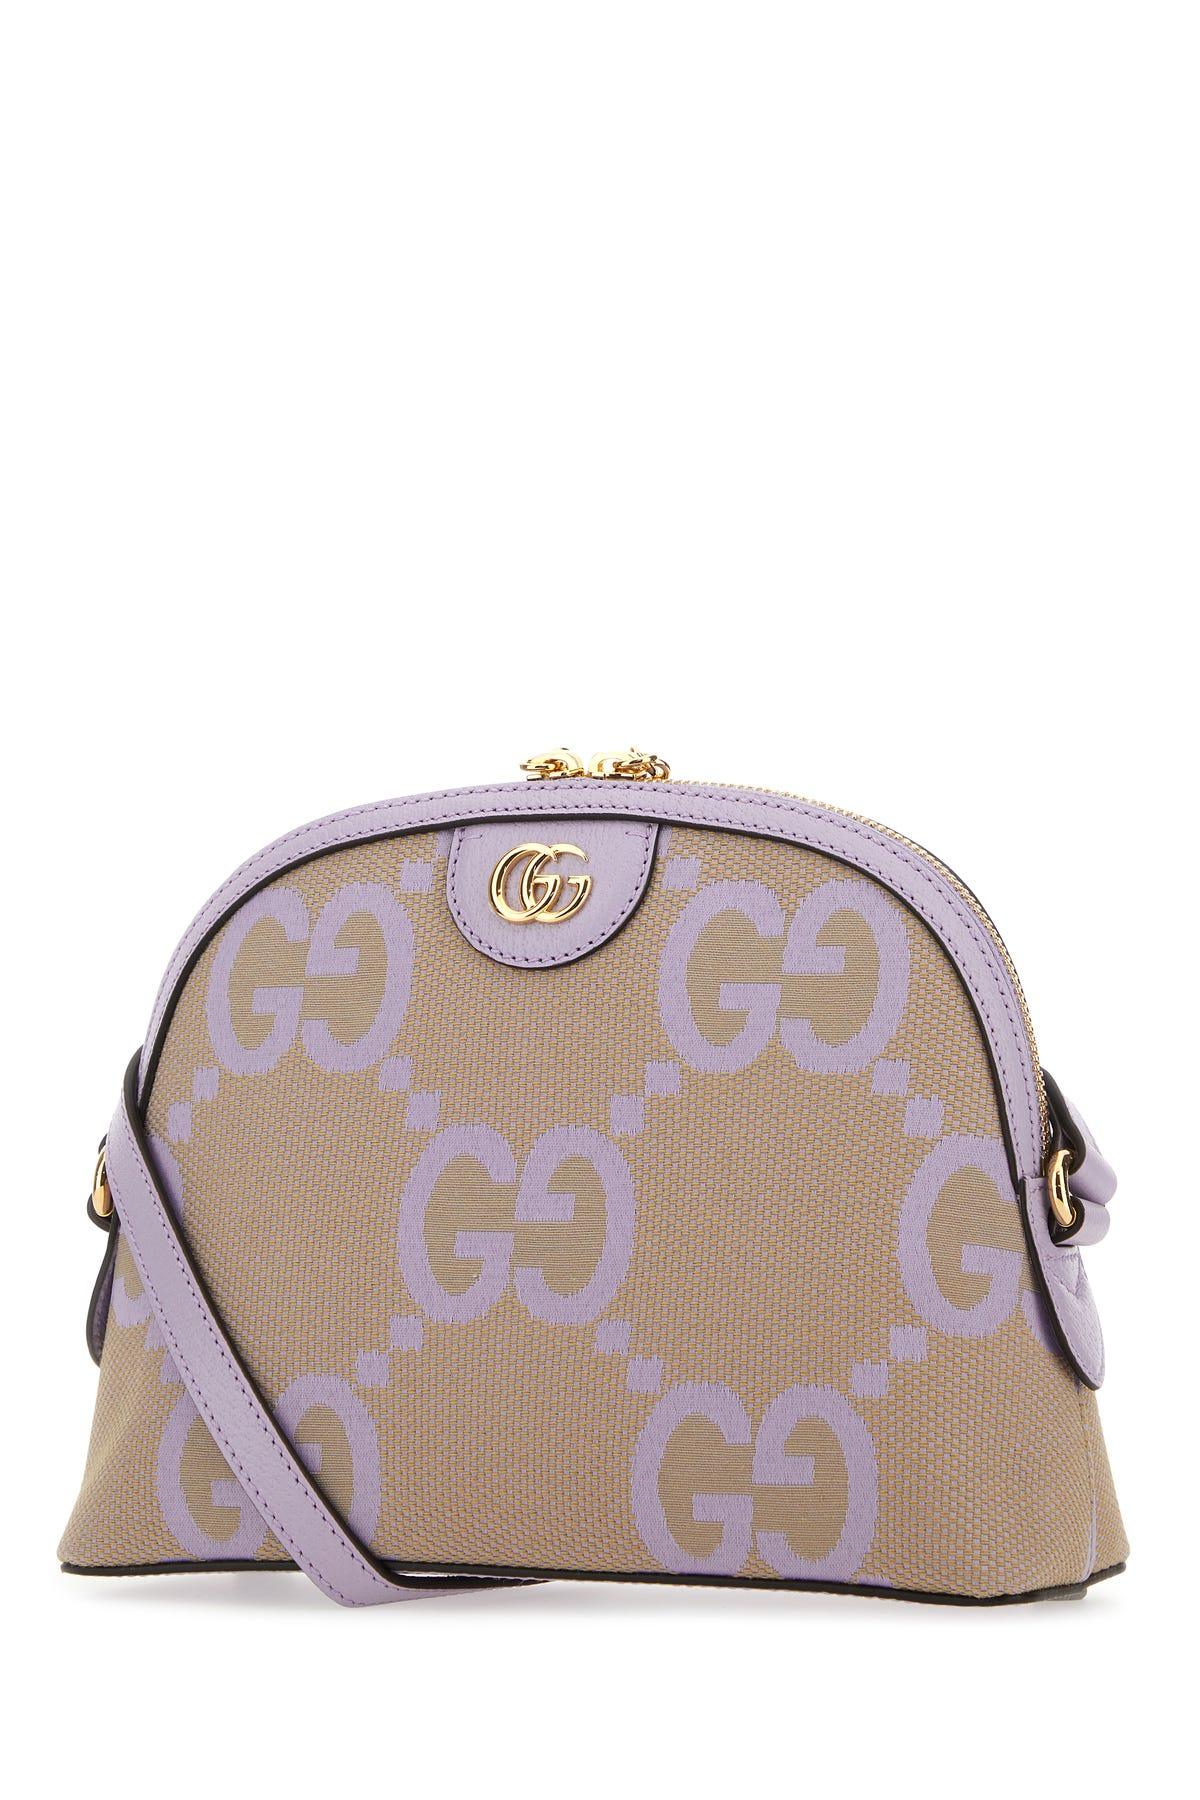 Gucci Shoulder Bags | Lyst